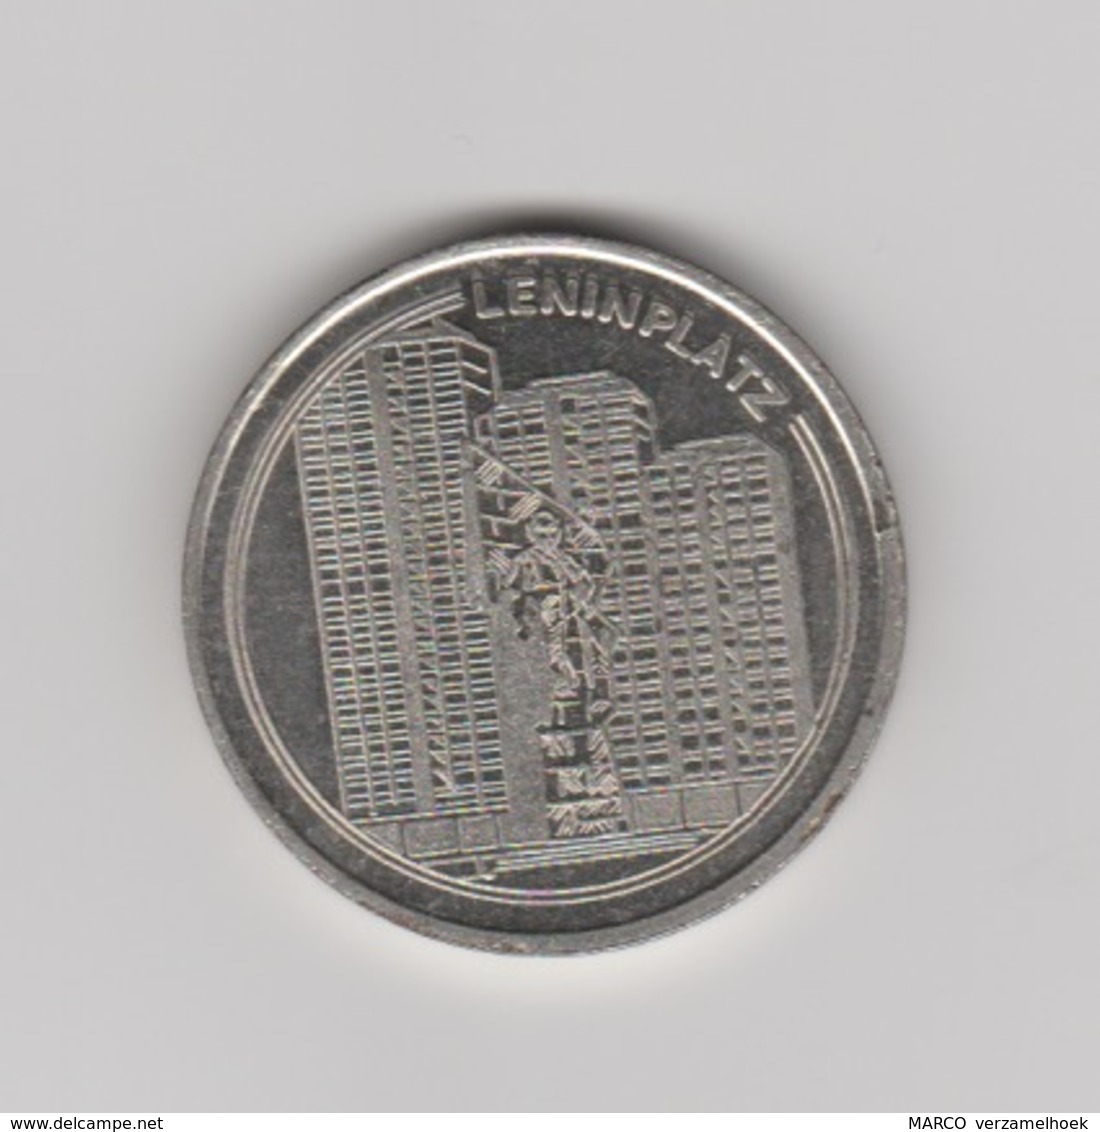 VEB Wohnungsbaukombinat "fritz Heckert" Berlin-berlijn (D) 1949-1989 Leninplatz - Elongated Coins